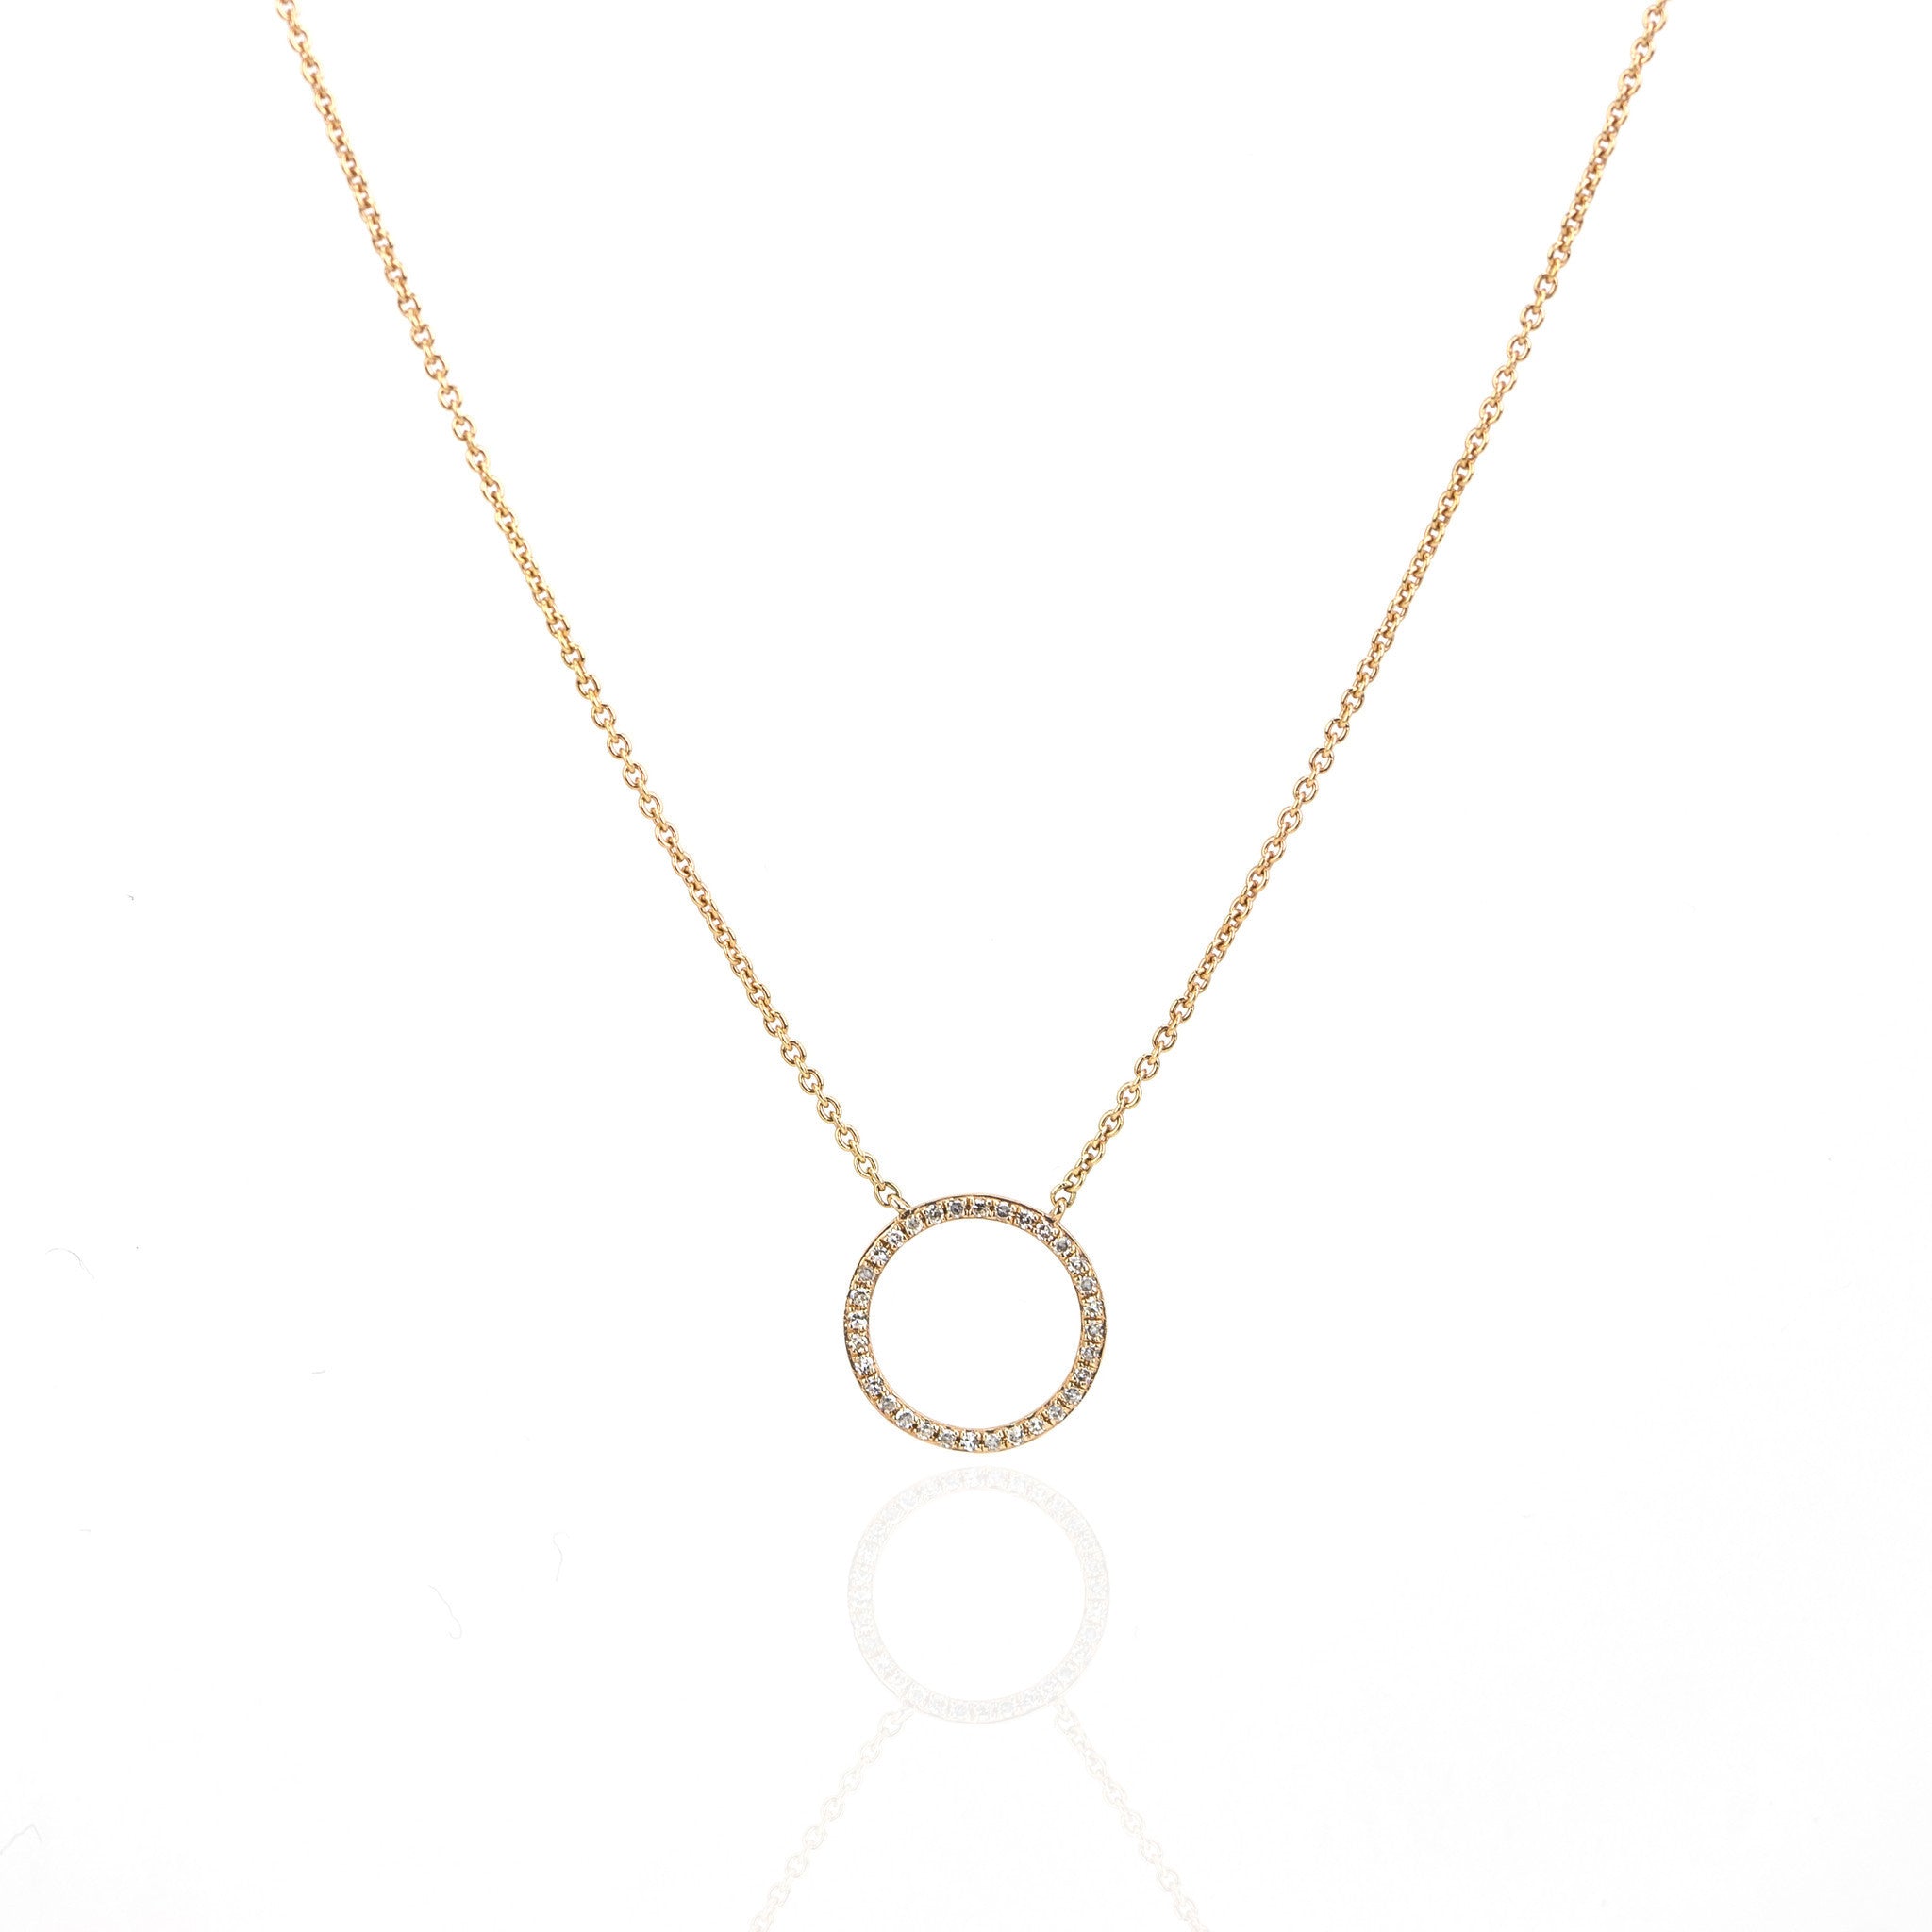 Halo Diamond Necklace by Atheria Jewelry